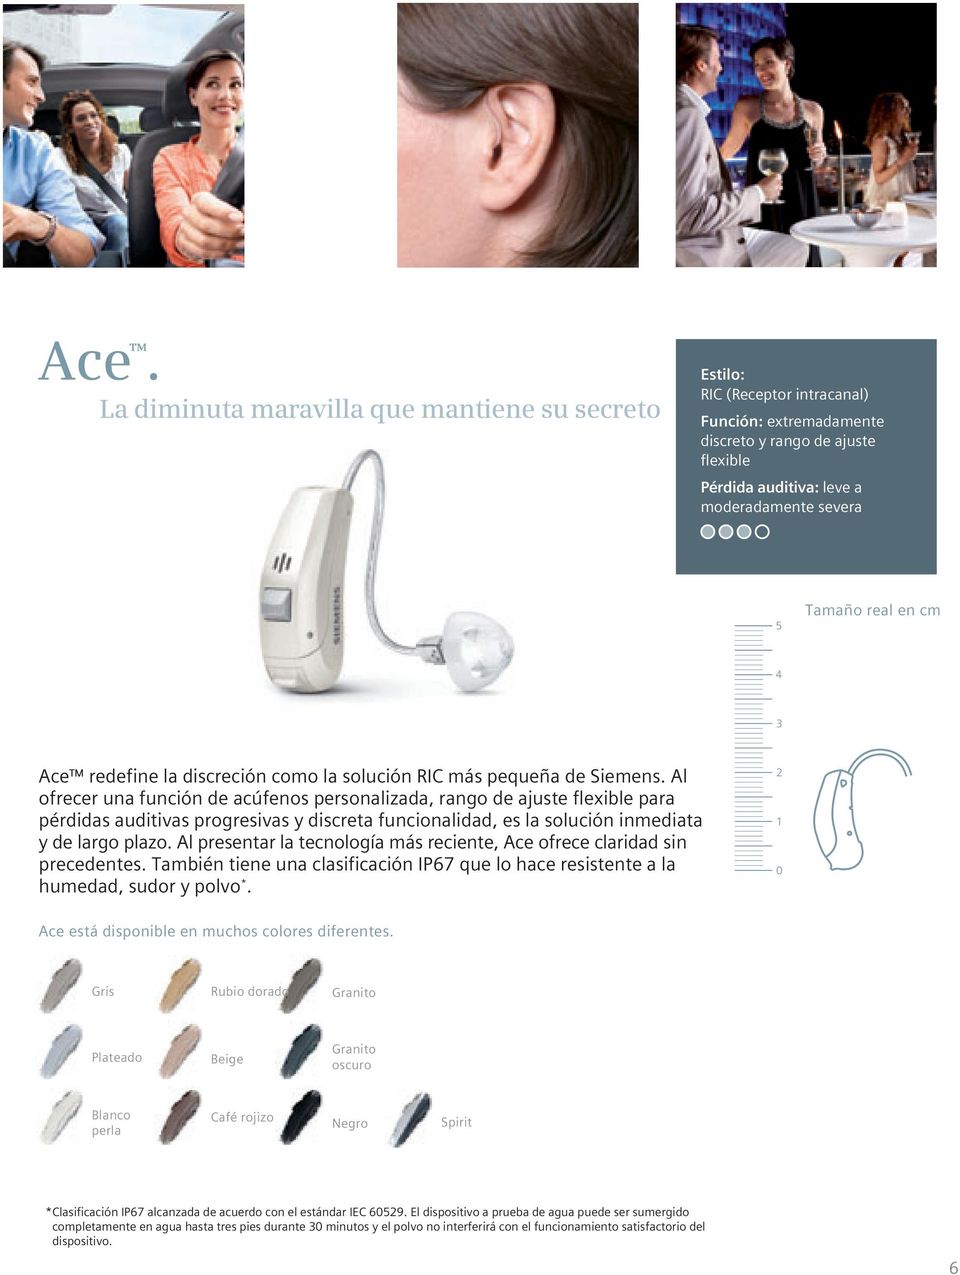 Al ofrecer una función de acúfenos personalizada, rango de ajuste flexible para pérdidas auditivas progresivas y discreta funcionalidad, es la solución inmediata y de largo plazo.